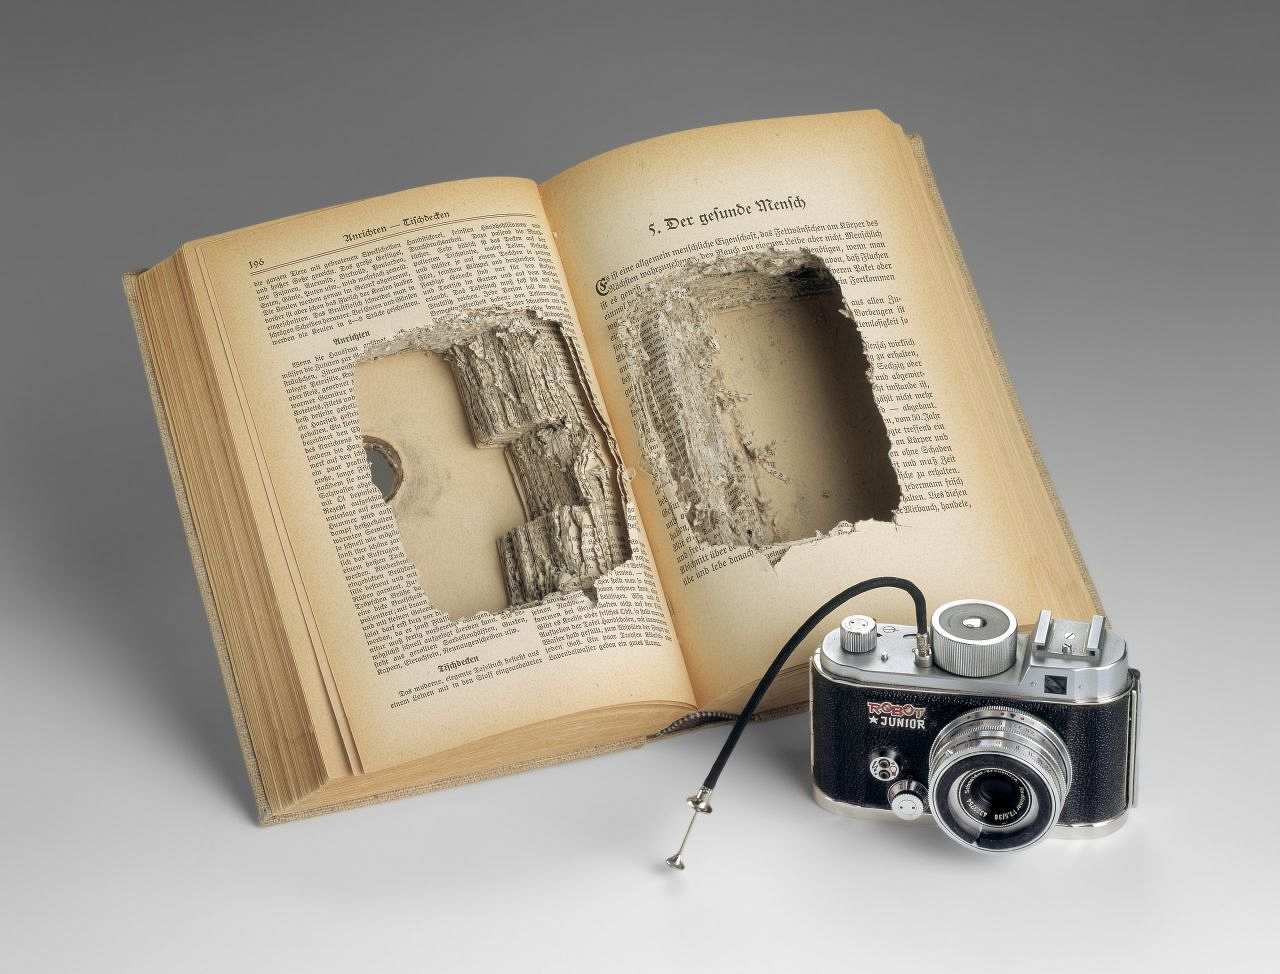 Fotoapparat der Marke Robot, Modell „Robot II“ mit der Seriennummer 35.001 - 39.000 (Baujahr 1941 bis 1942). Die Kamera hat er in einem ausgehöhlten Buch versteckt. Für Objektiv und Auslösemechanismus befinden sich Löcher in Deckel und Rücken.